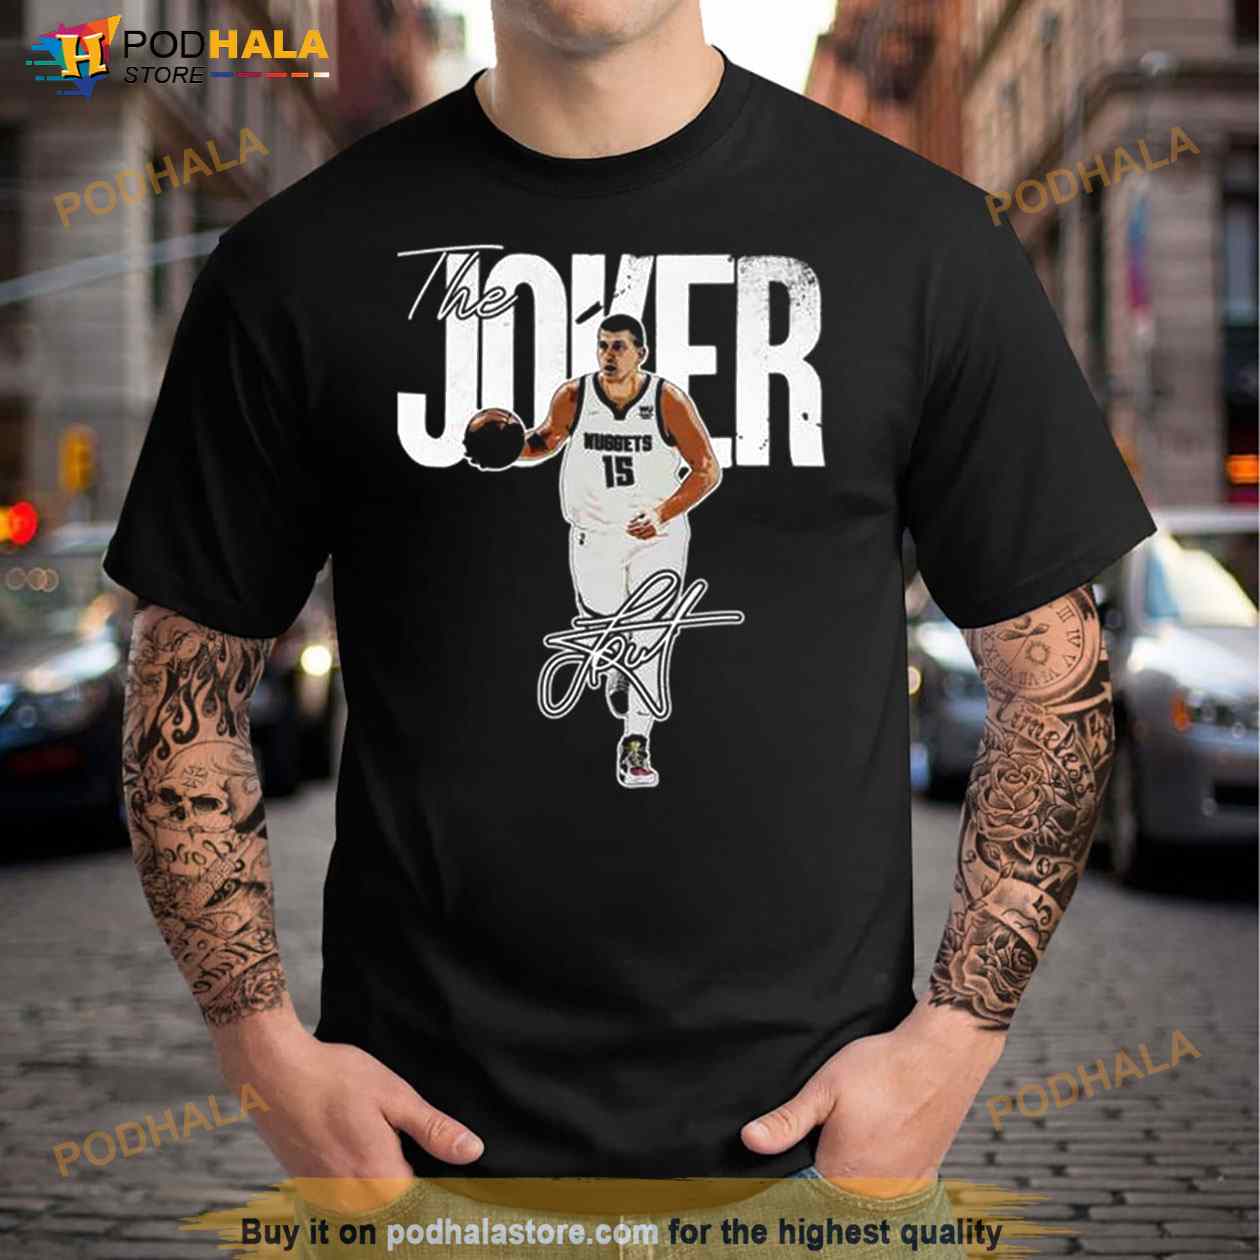 Vintage Denver Nuggets NBA Basketball Shirt Hoodie Tee Sweatshirt